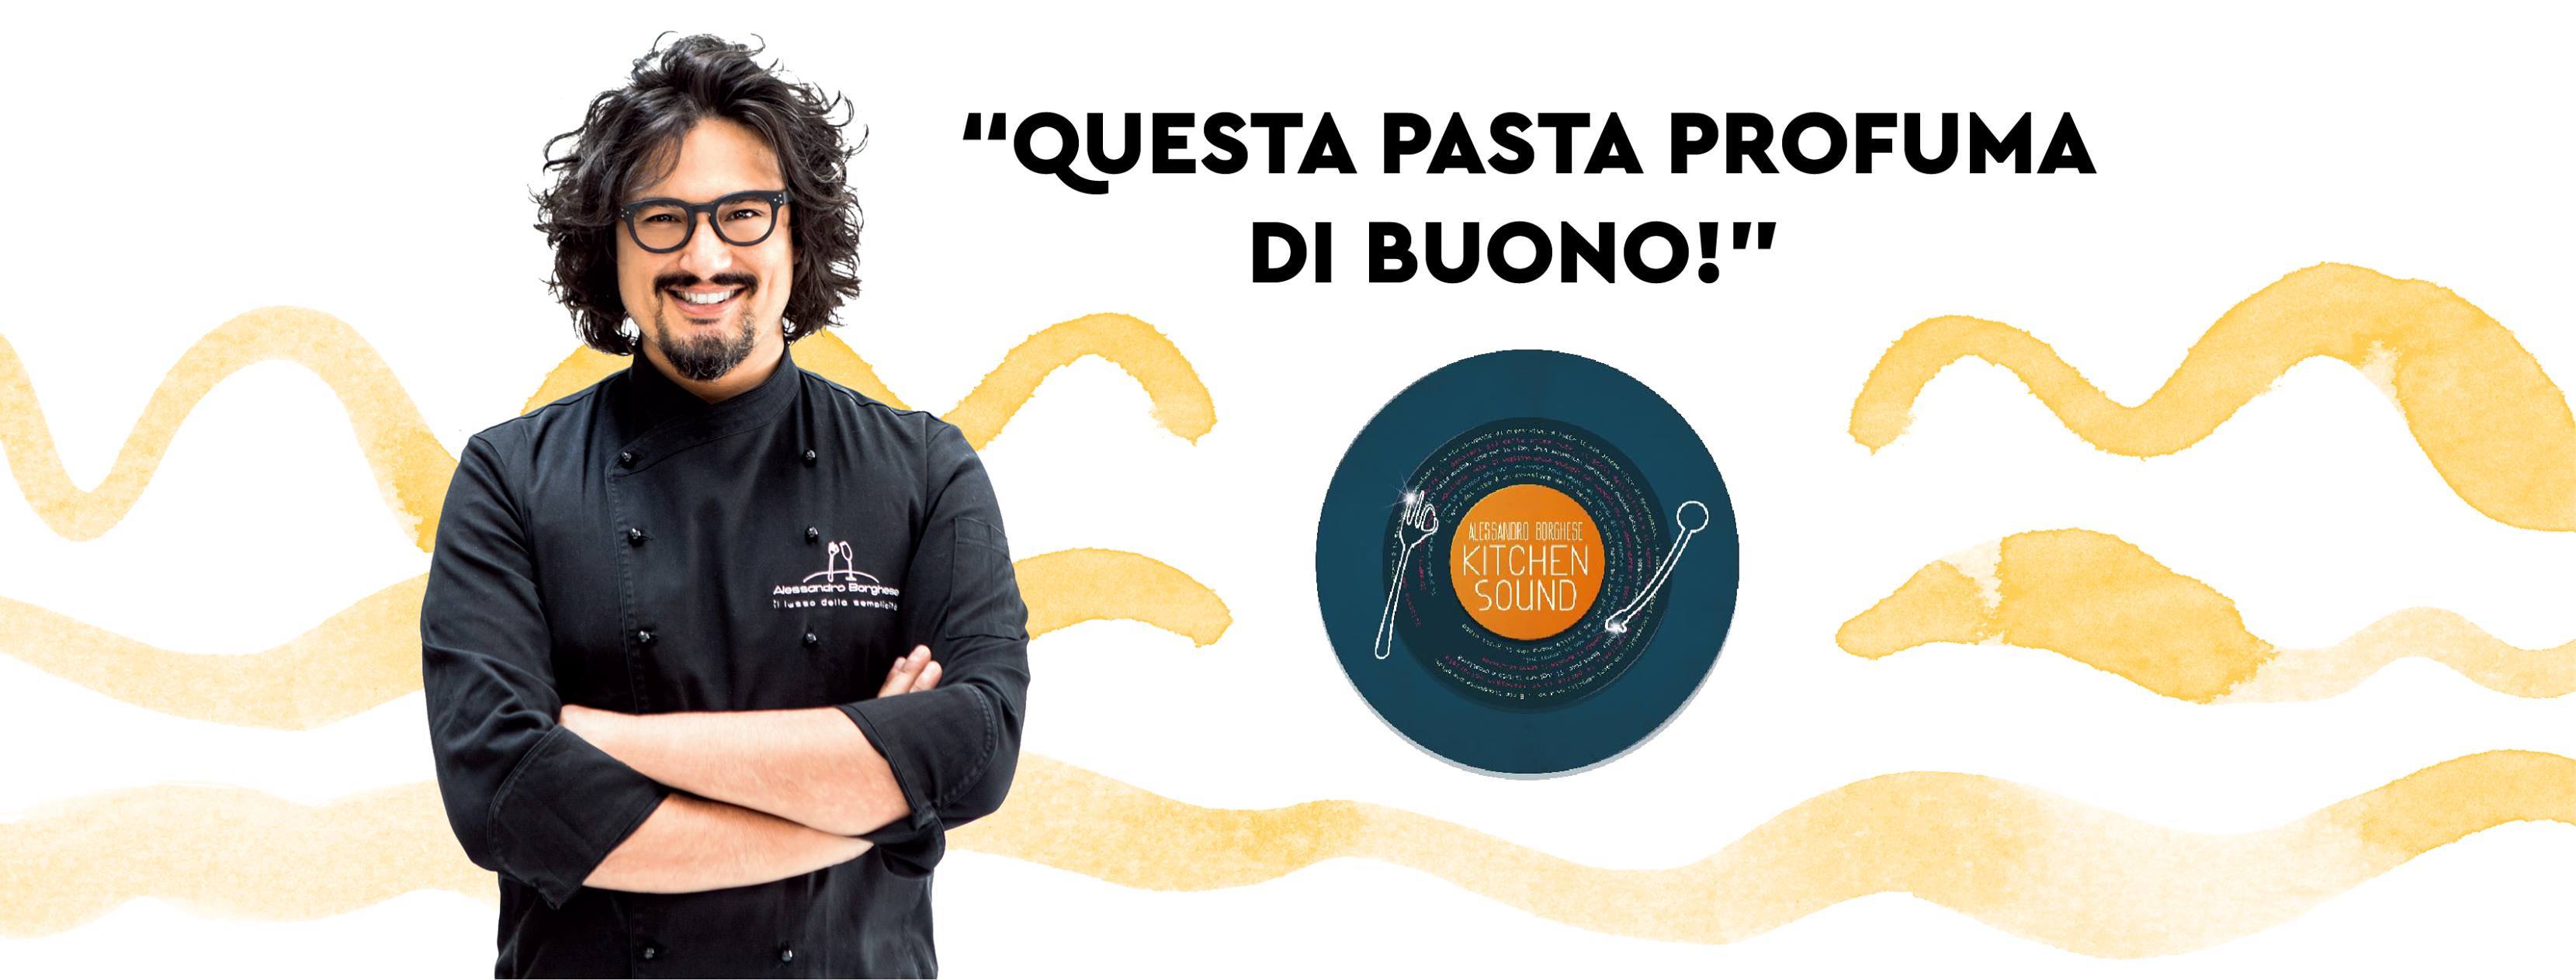 Al via la partnership tra Pasta Armando e chef Alessandro Borghese